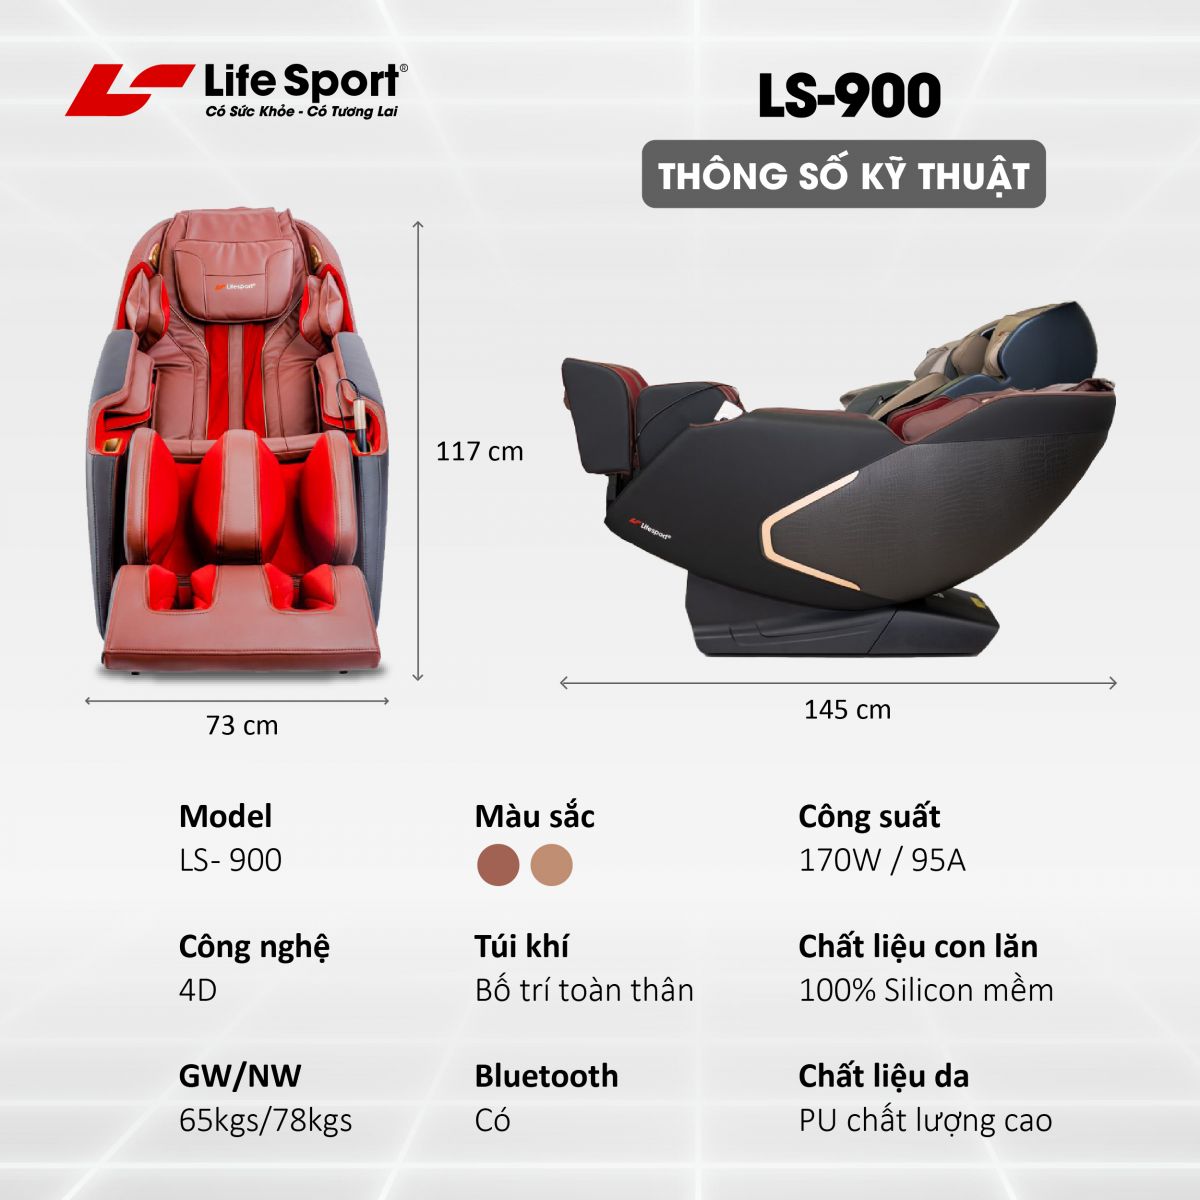 Kích thước sản phẩm ghế massage Life Sport LS-900